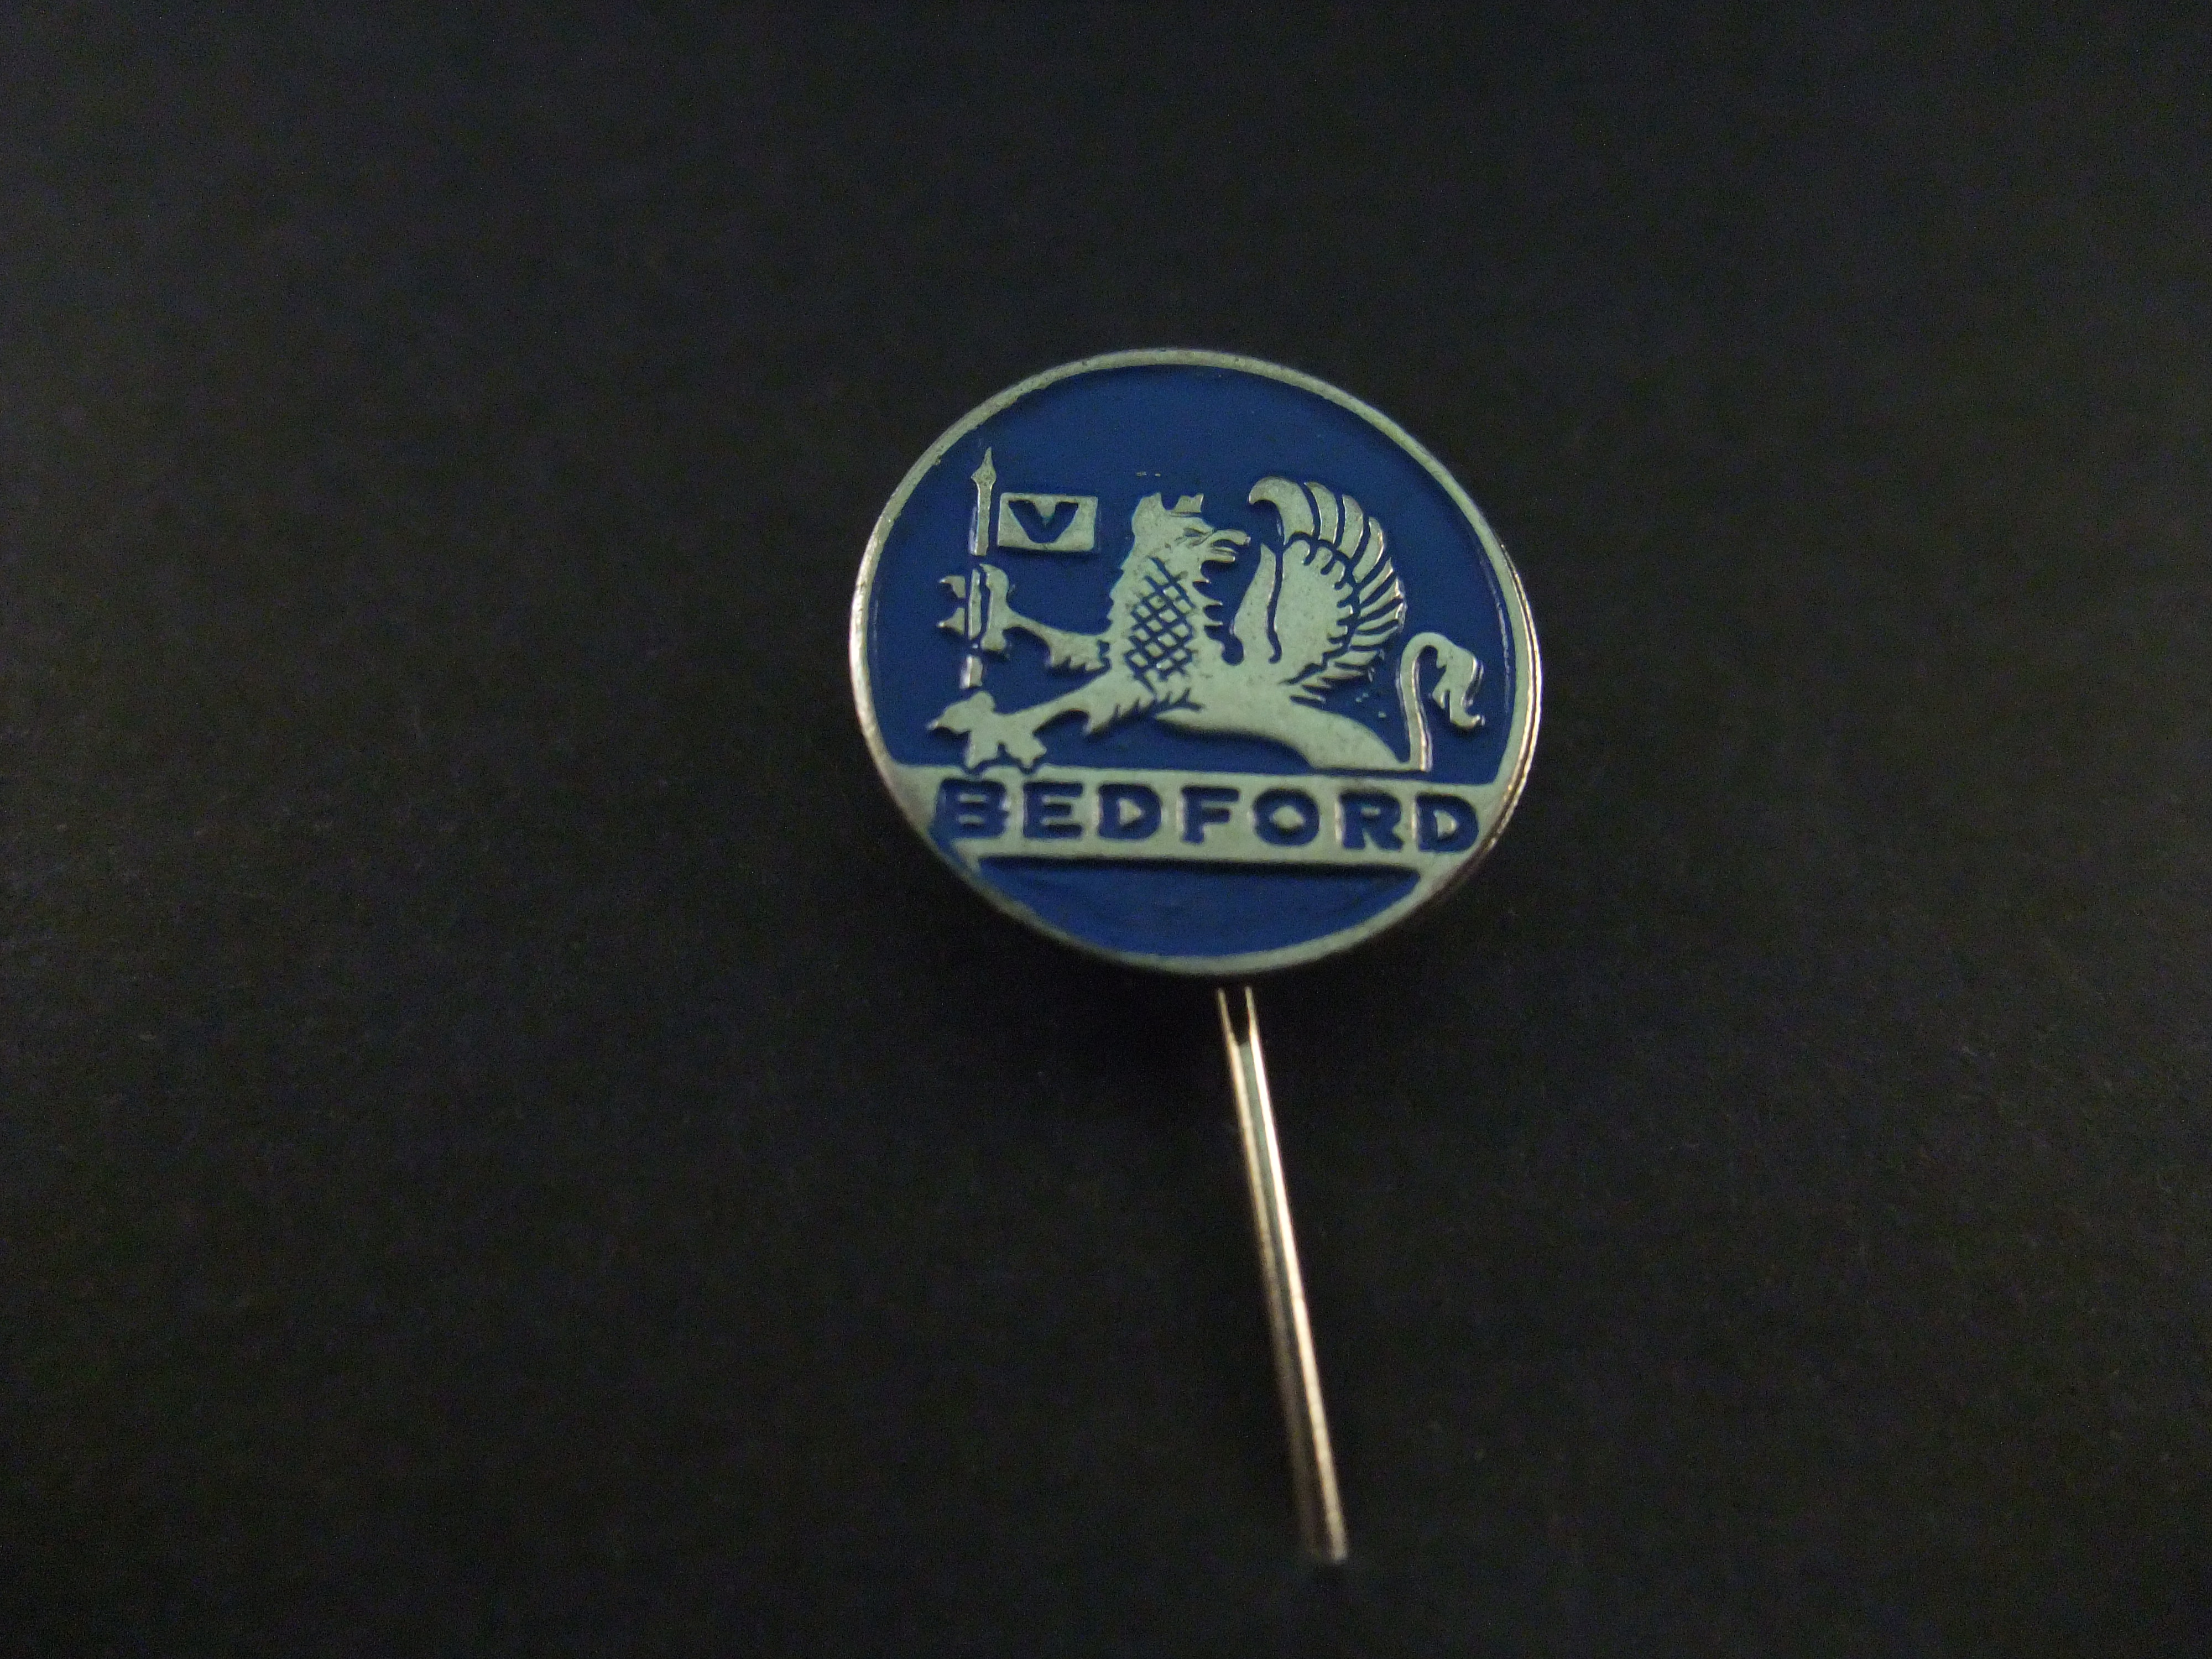 Bedford vrachtwagen blauw ( zilverkleurig) logo